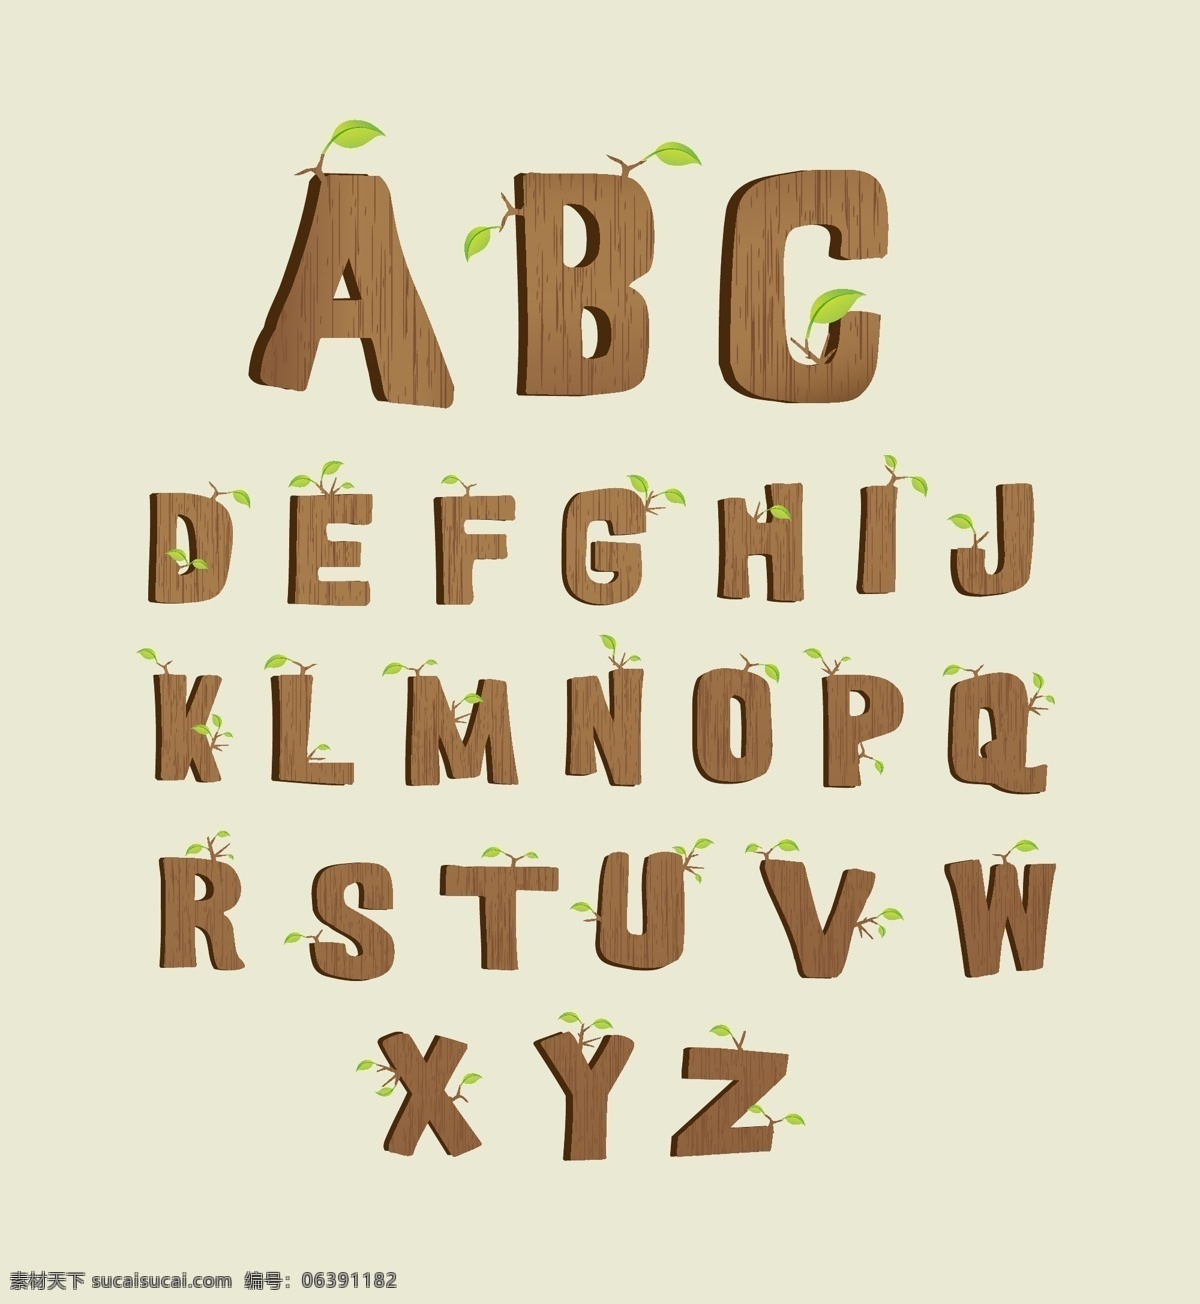 艺术字体设计 木纹 树叶 字体 字体设计 艺术字体 矢量字体 英文字母 字母设计 英文字体 矢量素材 书画文字 文化艺术 白色